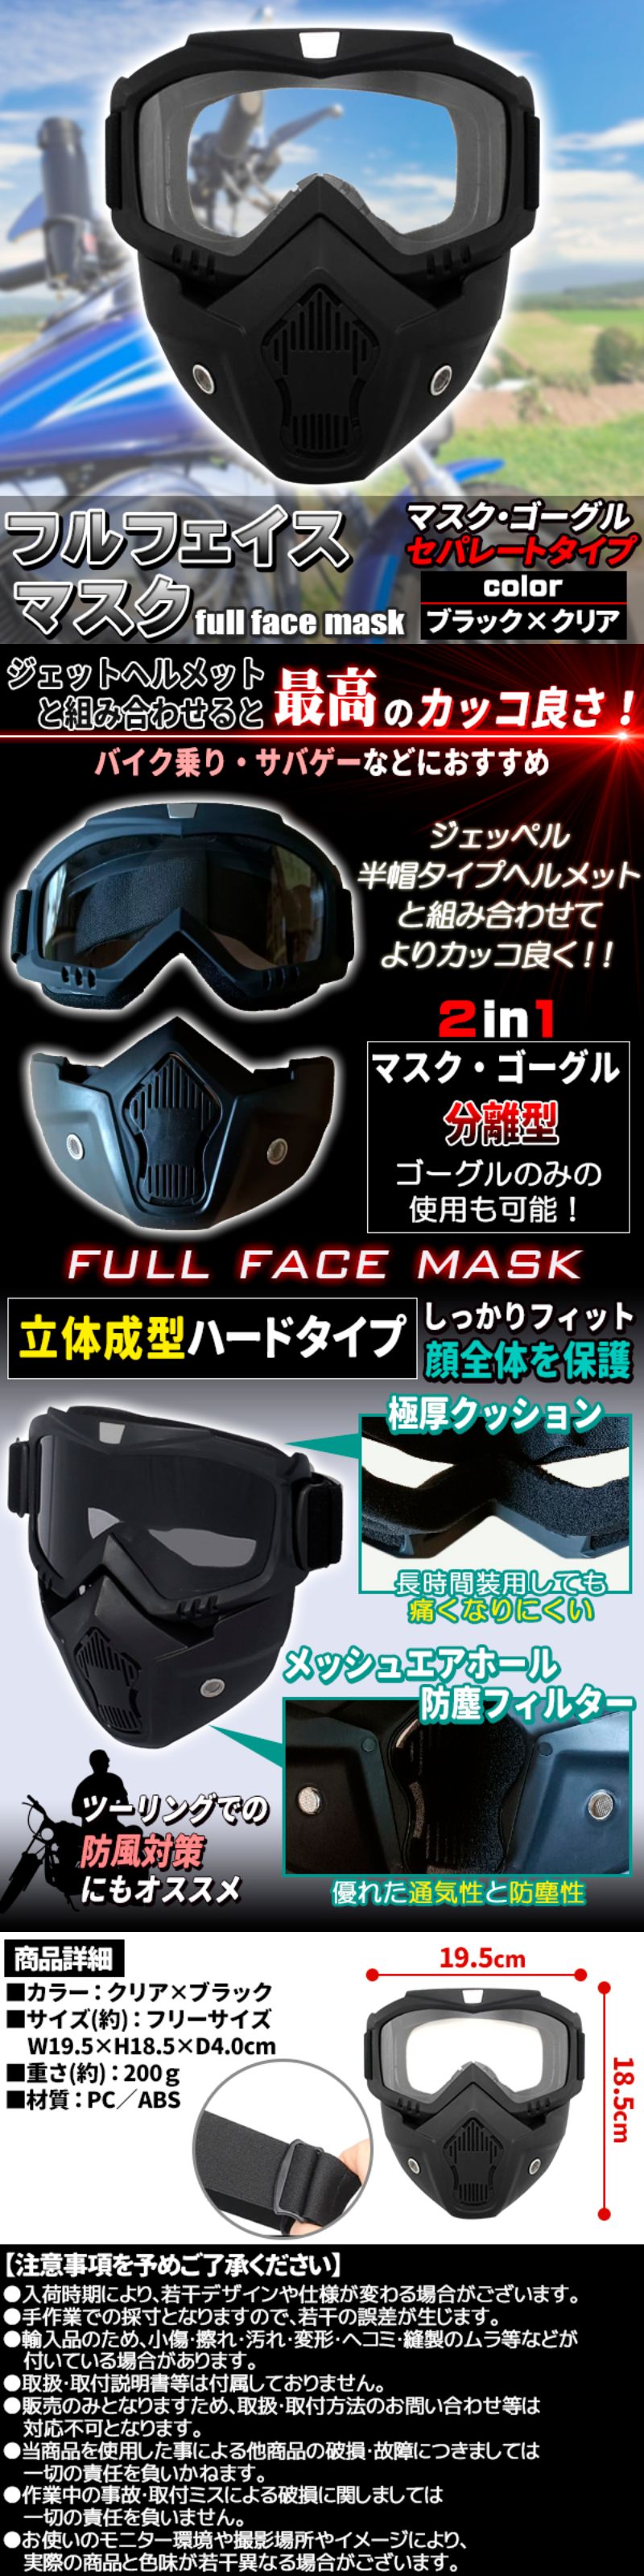 バイク汎用マスク